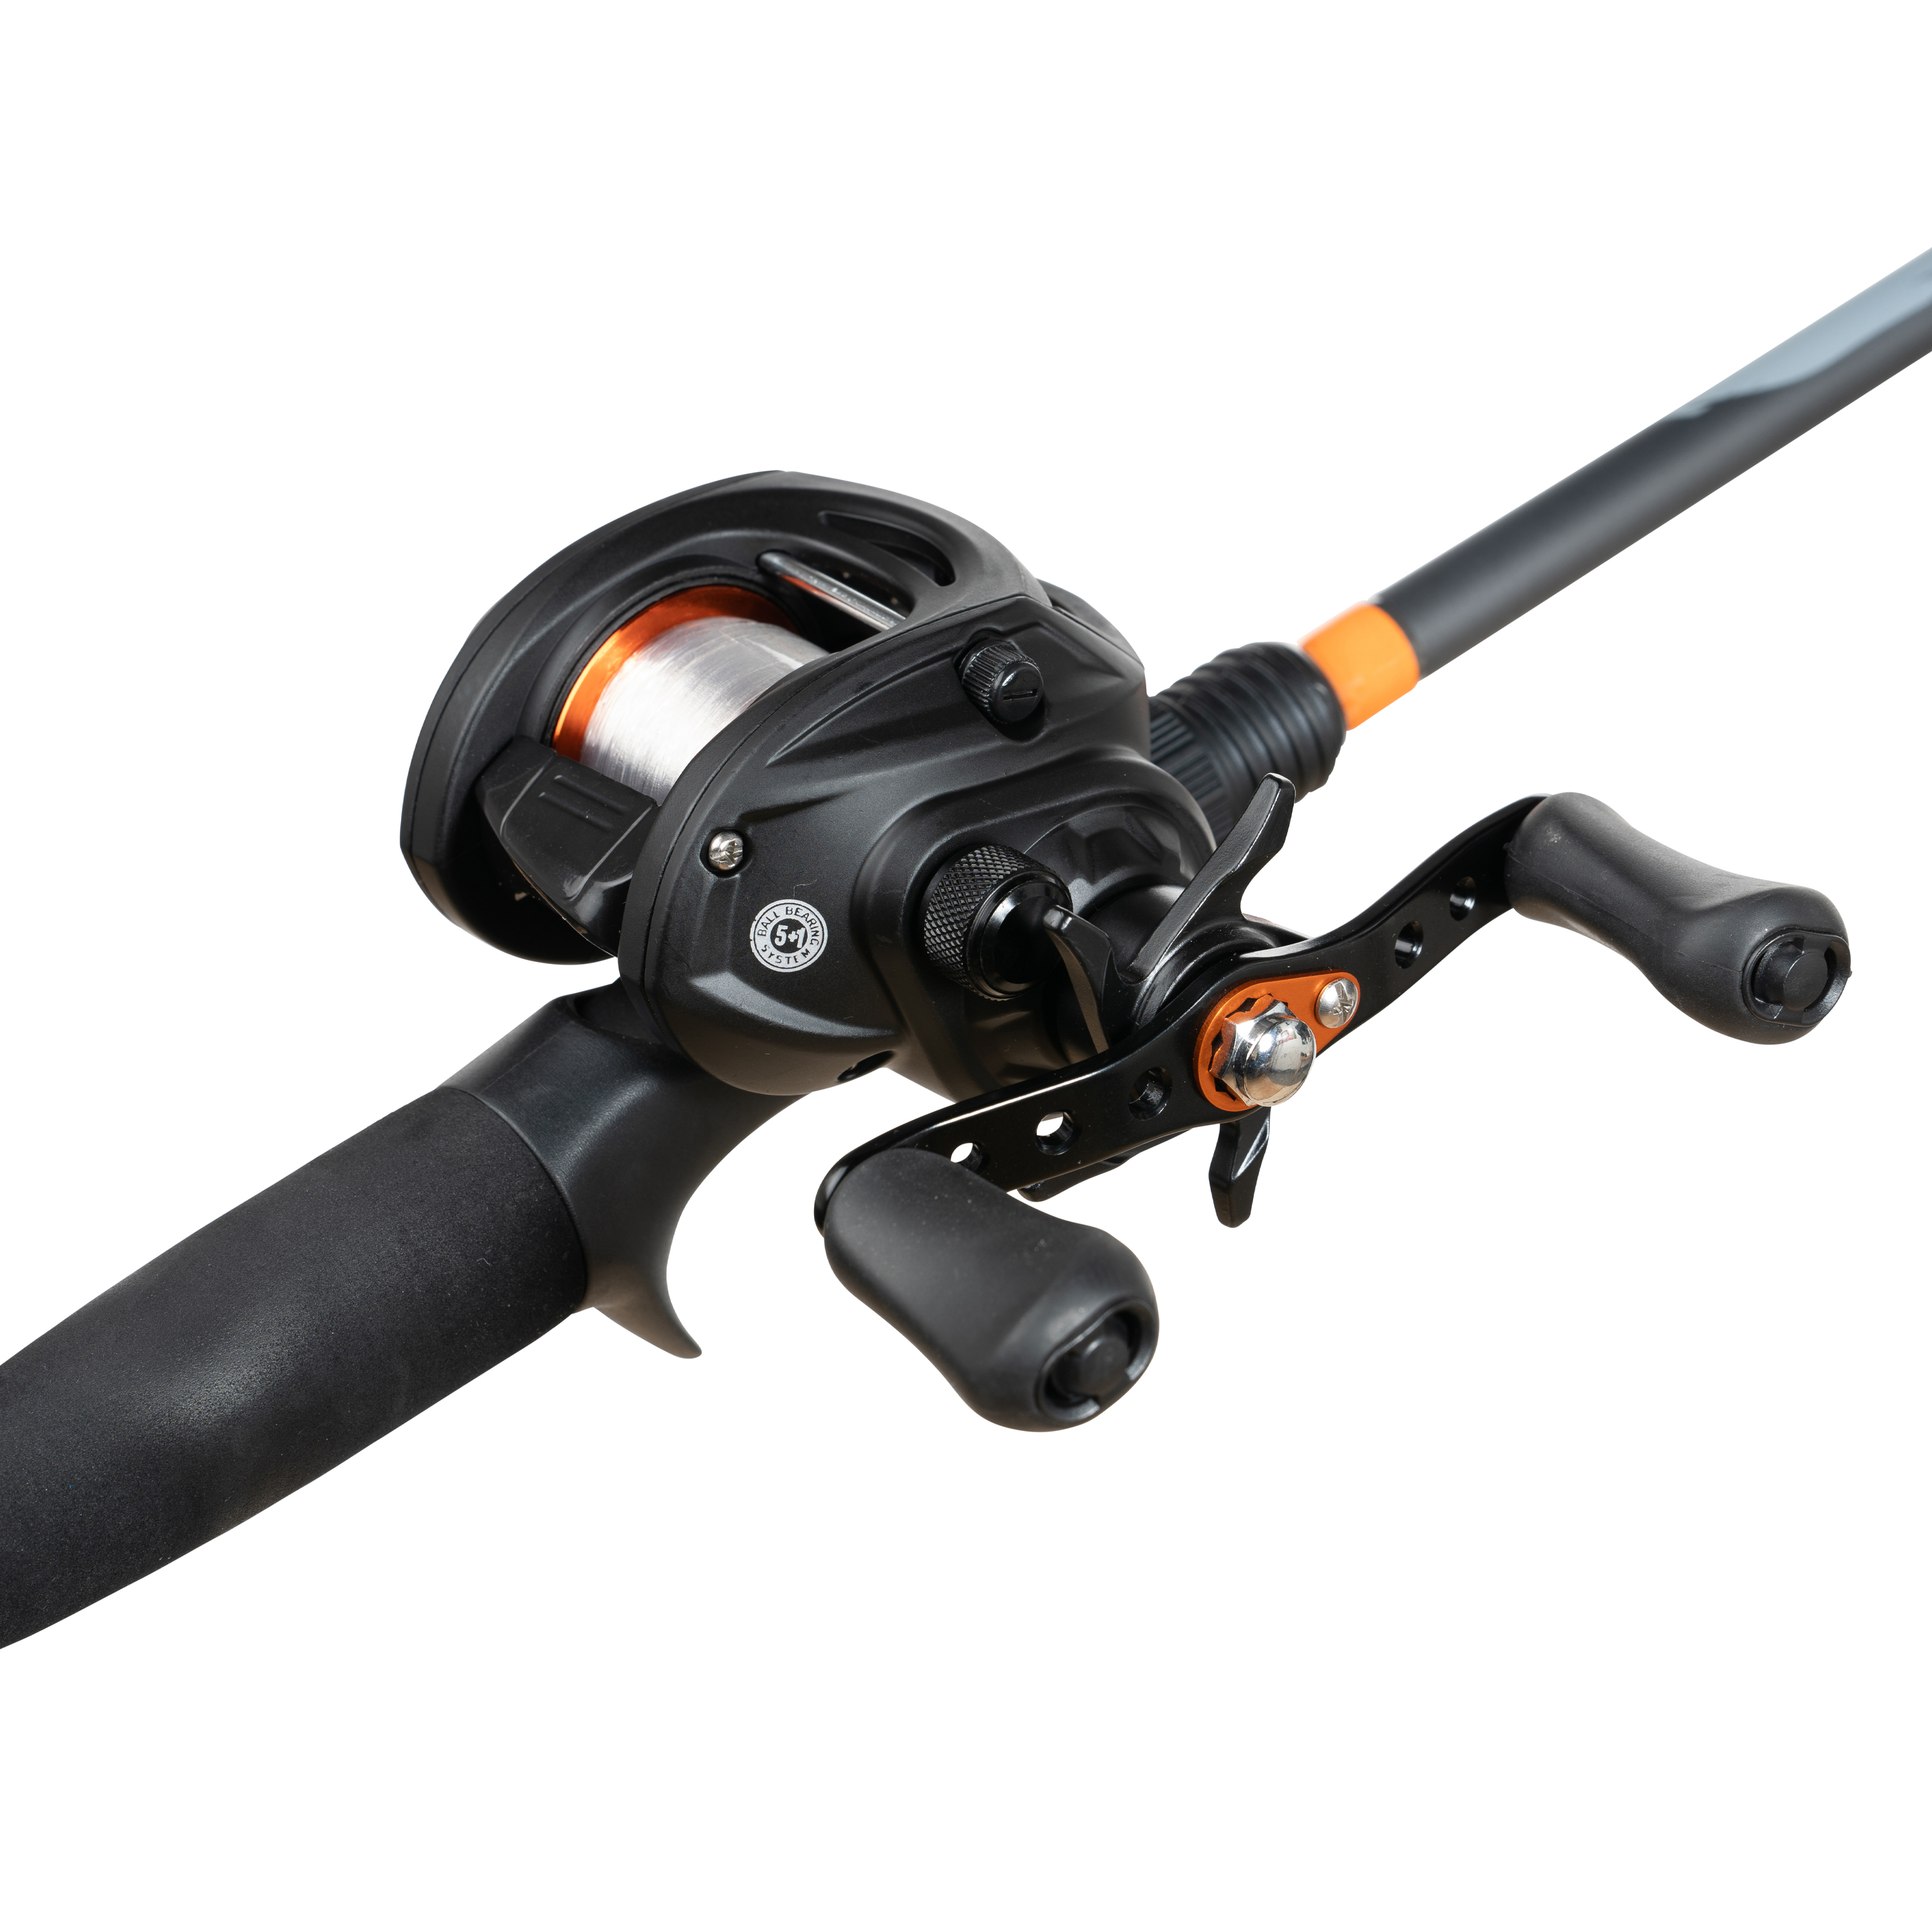 Ozark Trail Baitcast Rod & Reel Fishing Combo, Medium Action, 6.5ft - Black and Orange - image 3 of 7